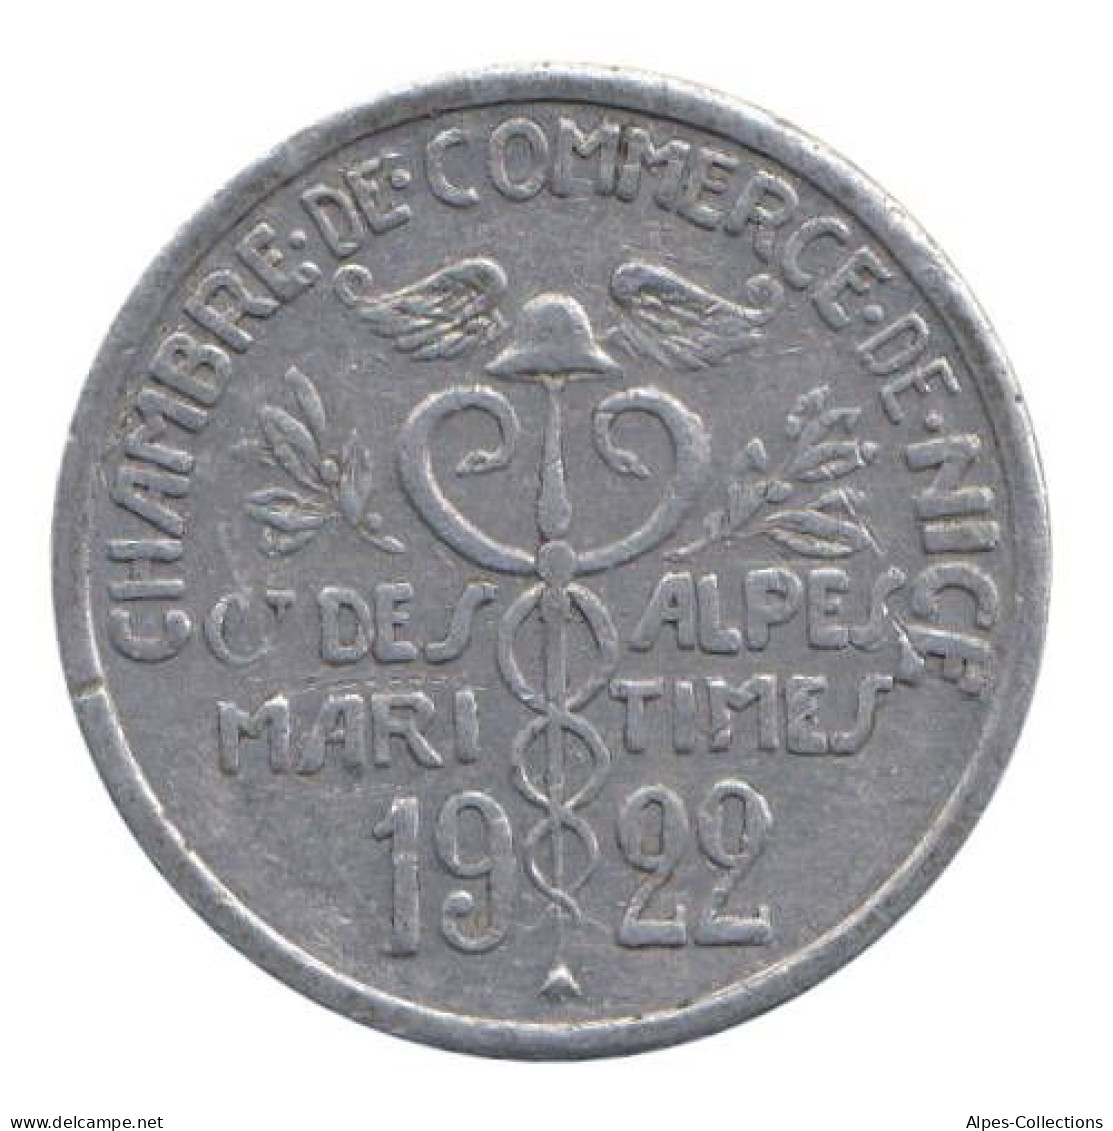 NICE - 01.03 - Monnaie De Nécessité - 5 Centimes 1922 - Monétaires / De Nécessité